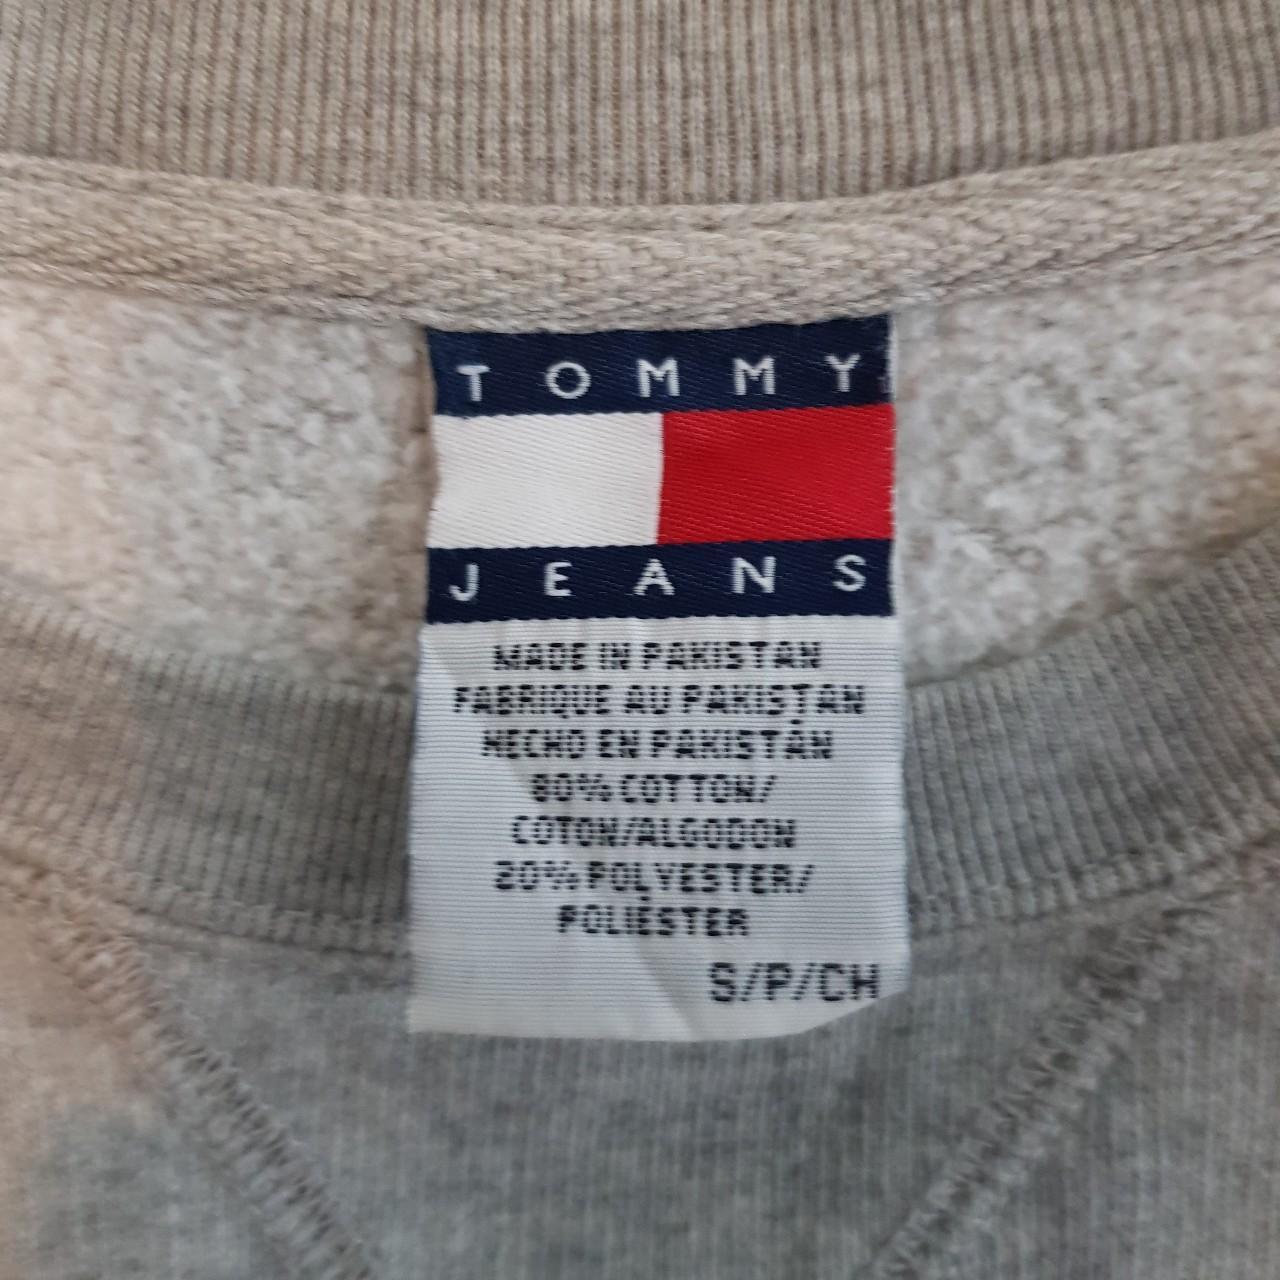 Vintage Tommy Hilfiger embroidered sweatshirt size S... - Depop